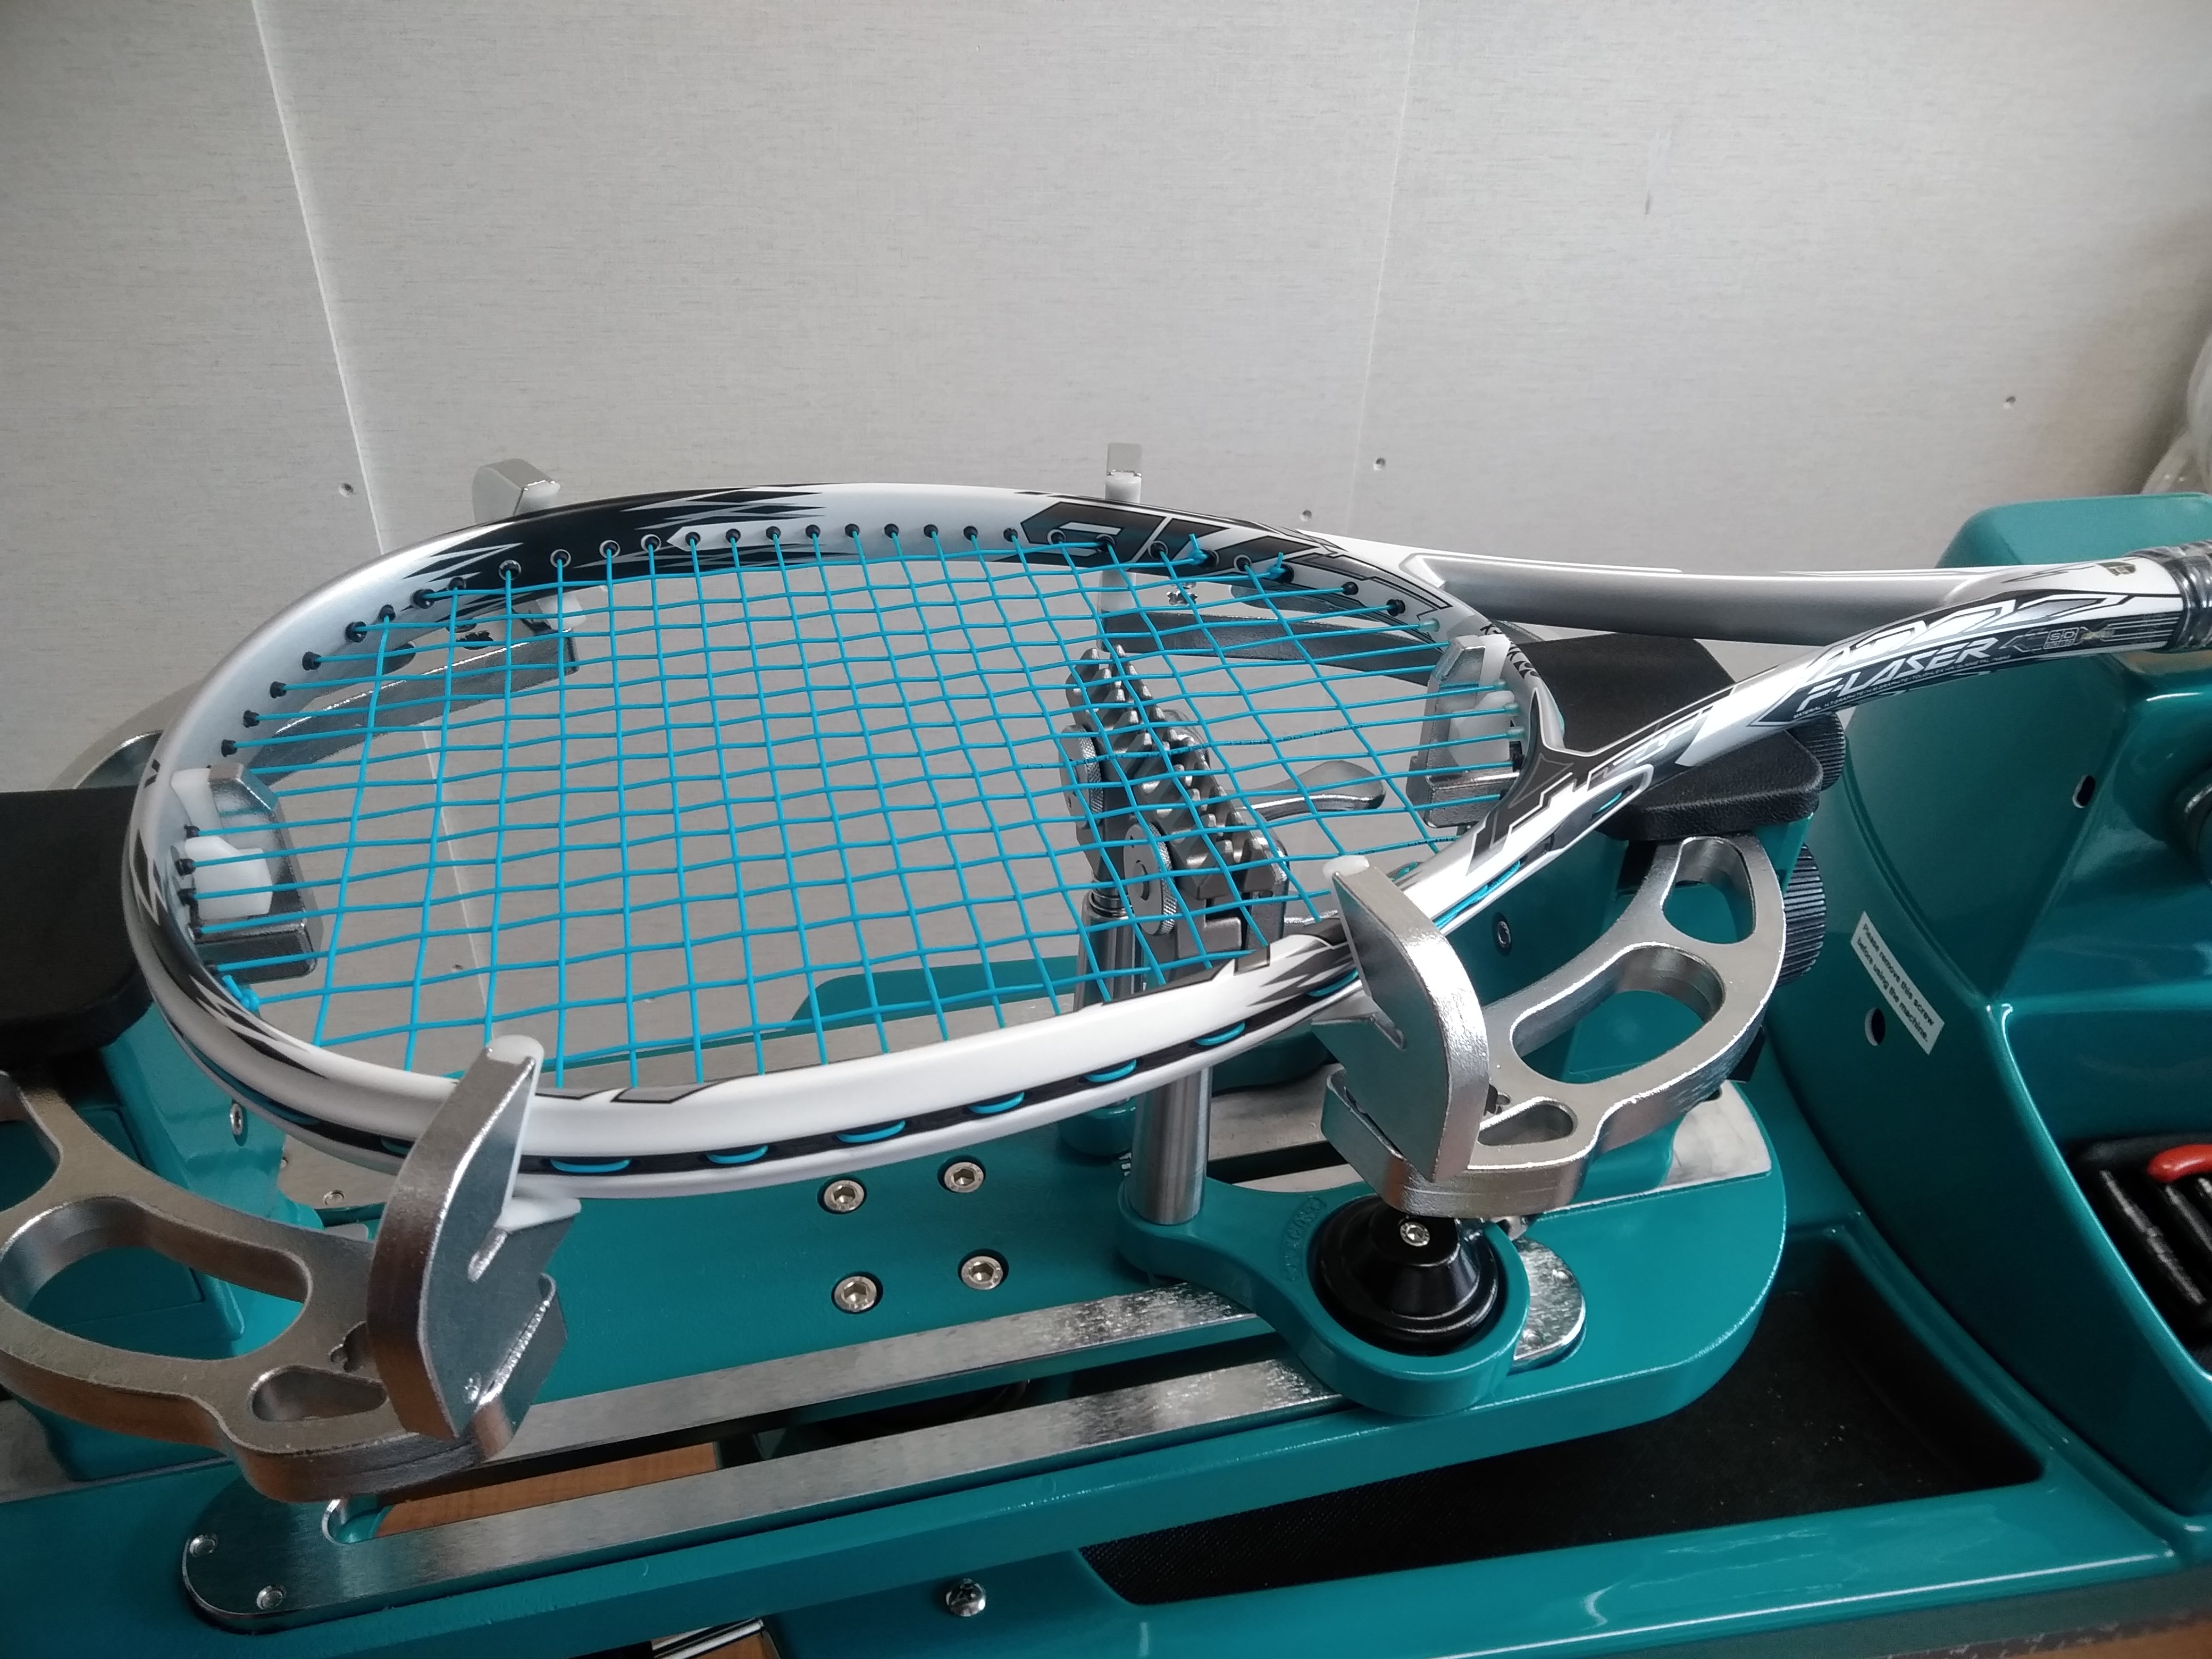 エフレーザー9Vのみです - テニス